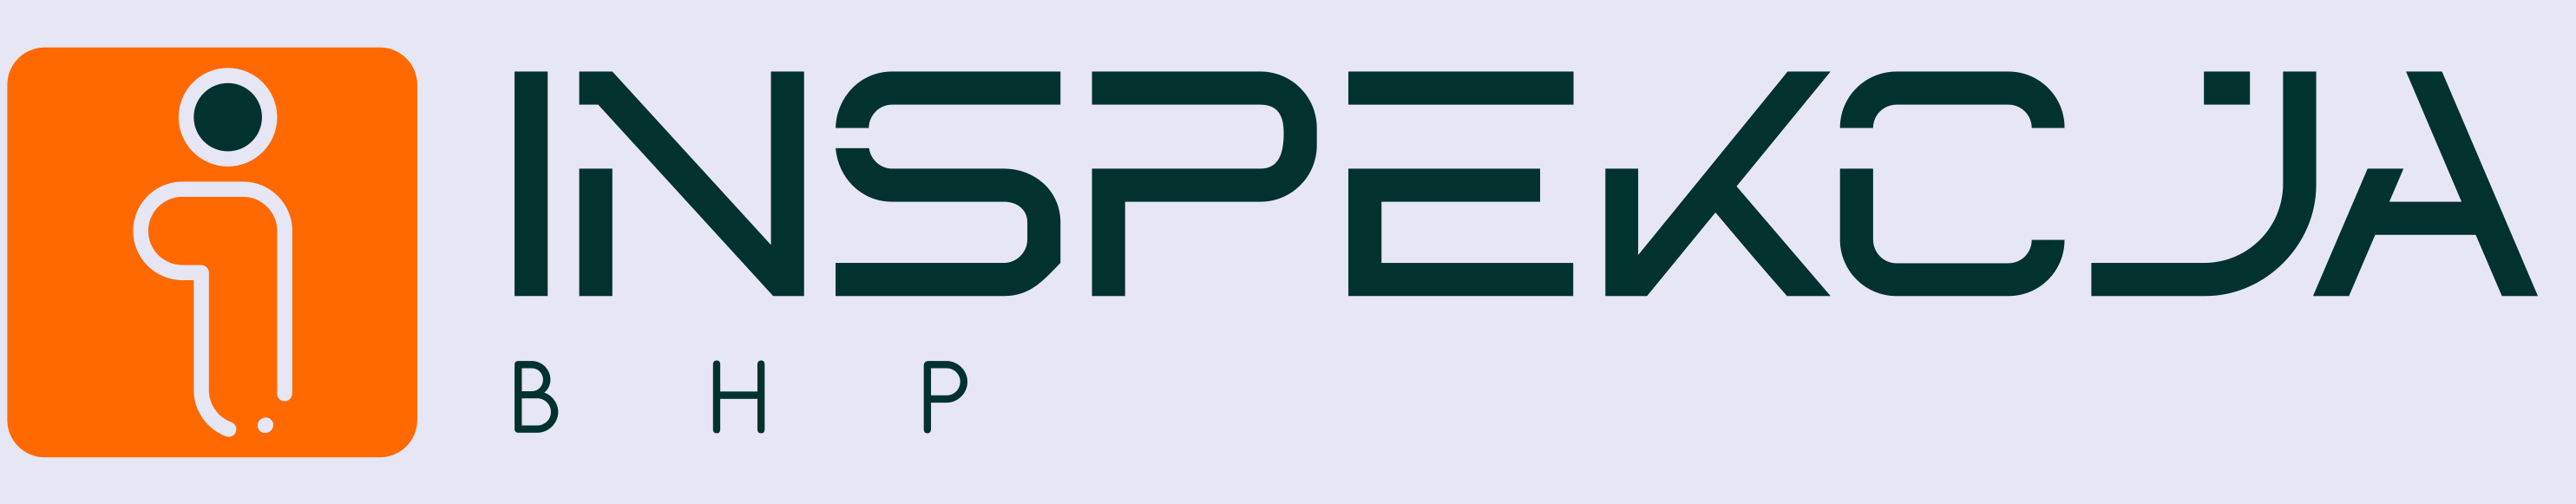 inspekcja bhp logo